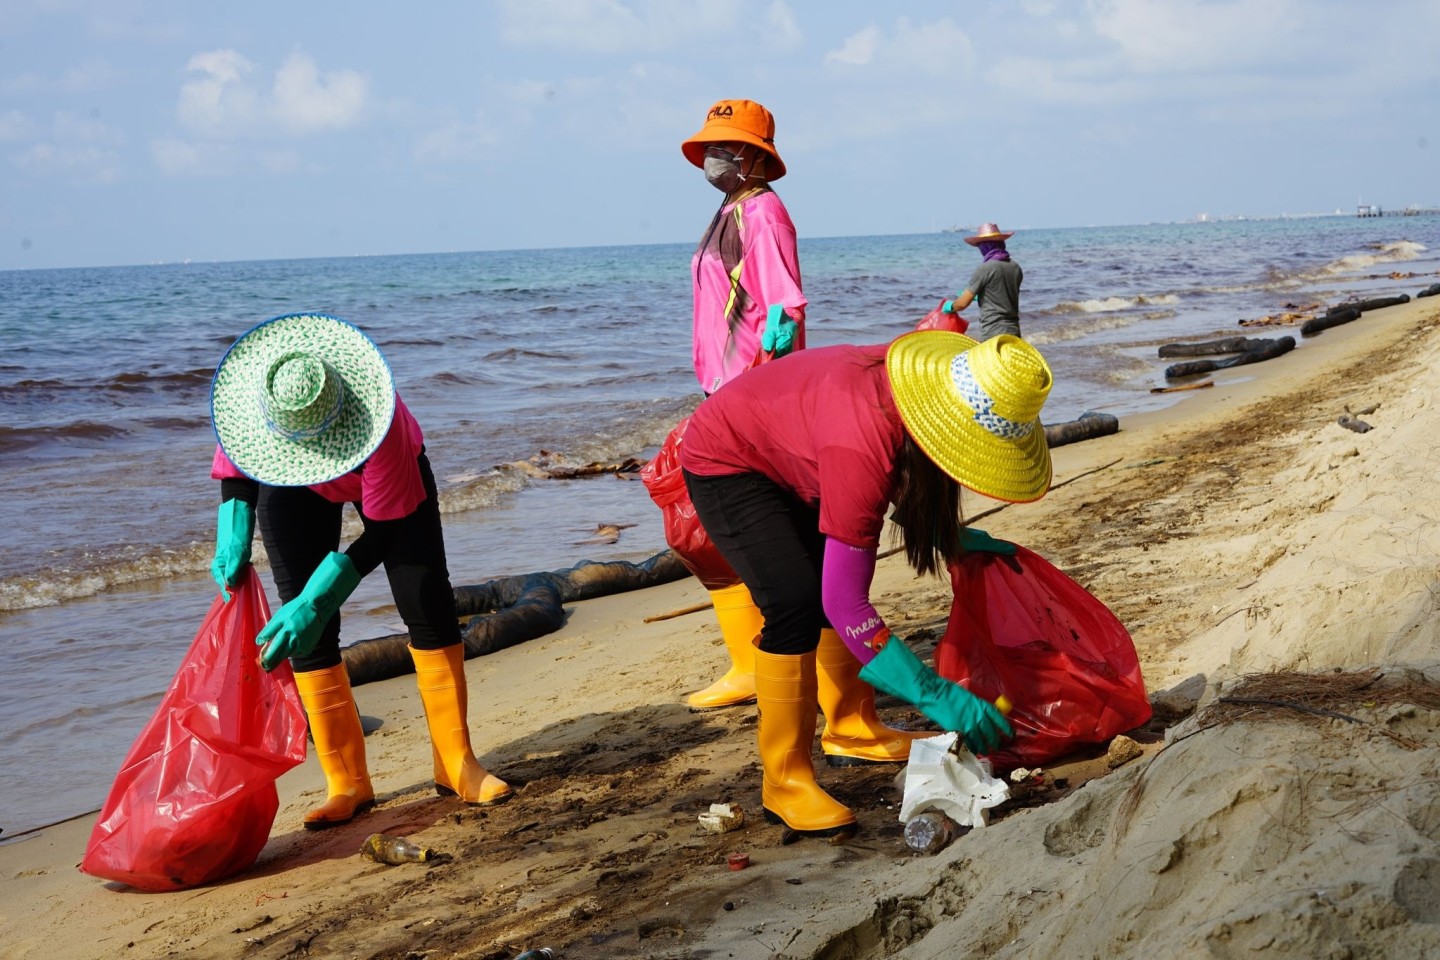 Am Strand Mae Ramphueng in der Provinz Rayon wird mit Öl verschmutztes Material eingesammelt.